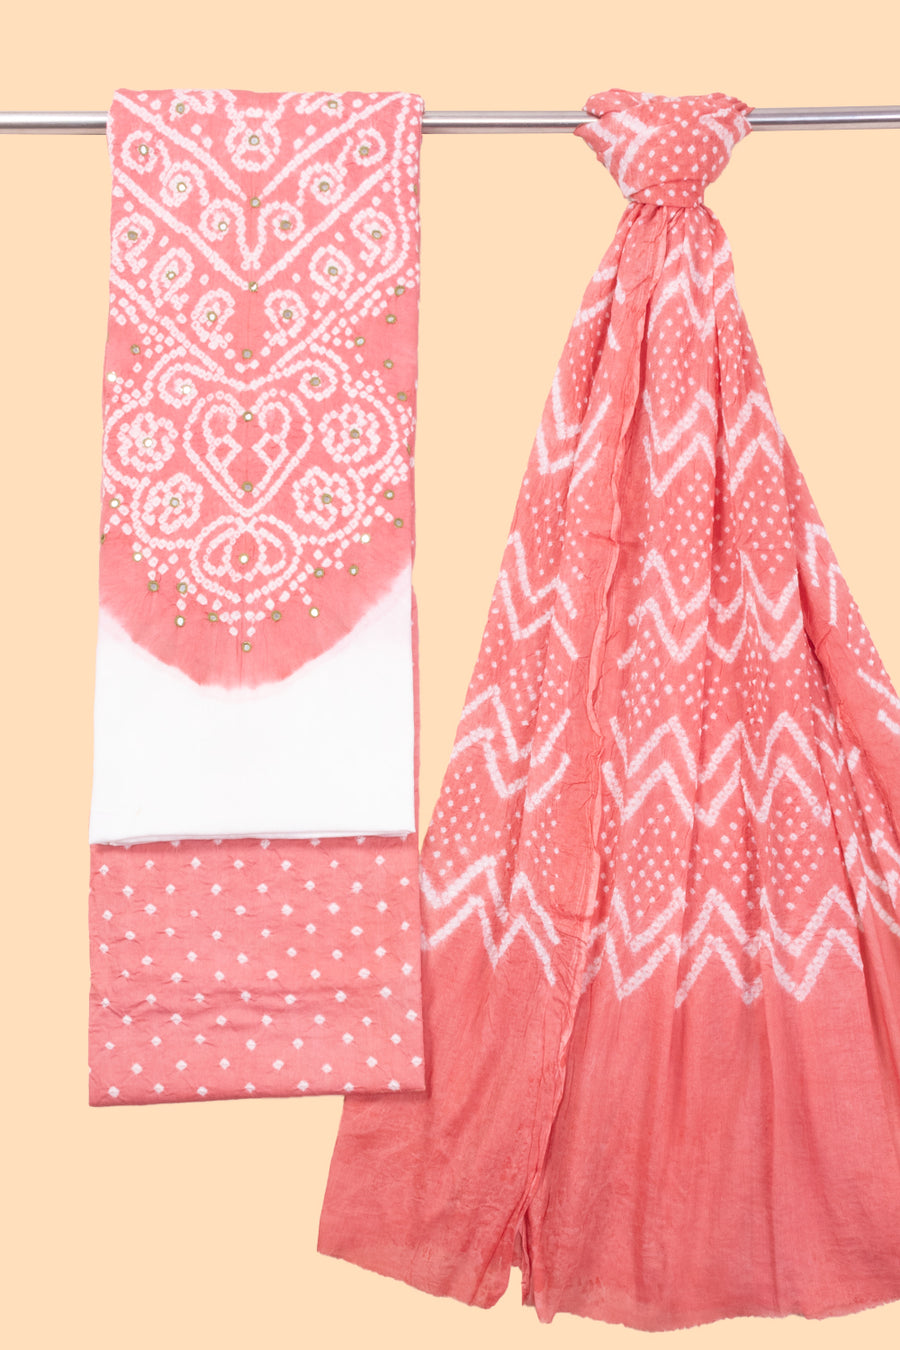 Coral Pink Bandhani Cotton 3-Piece Salwar Suit Material-Avishya